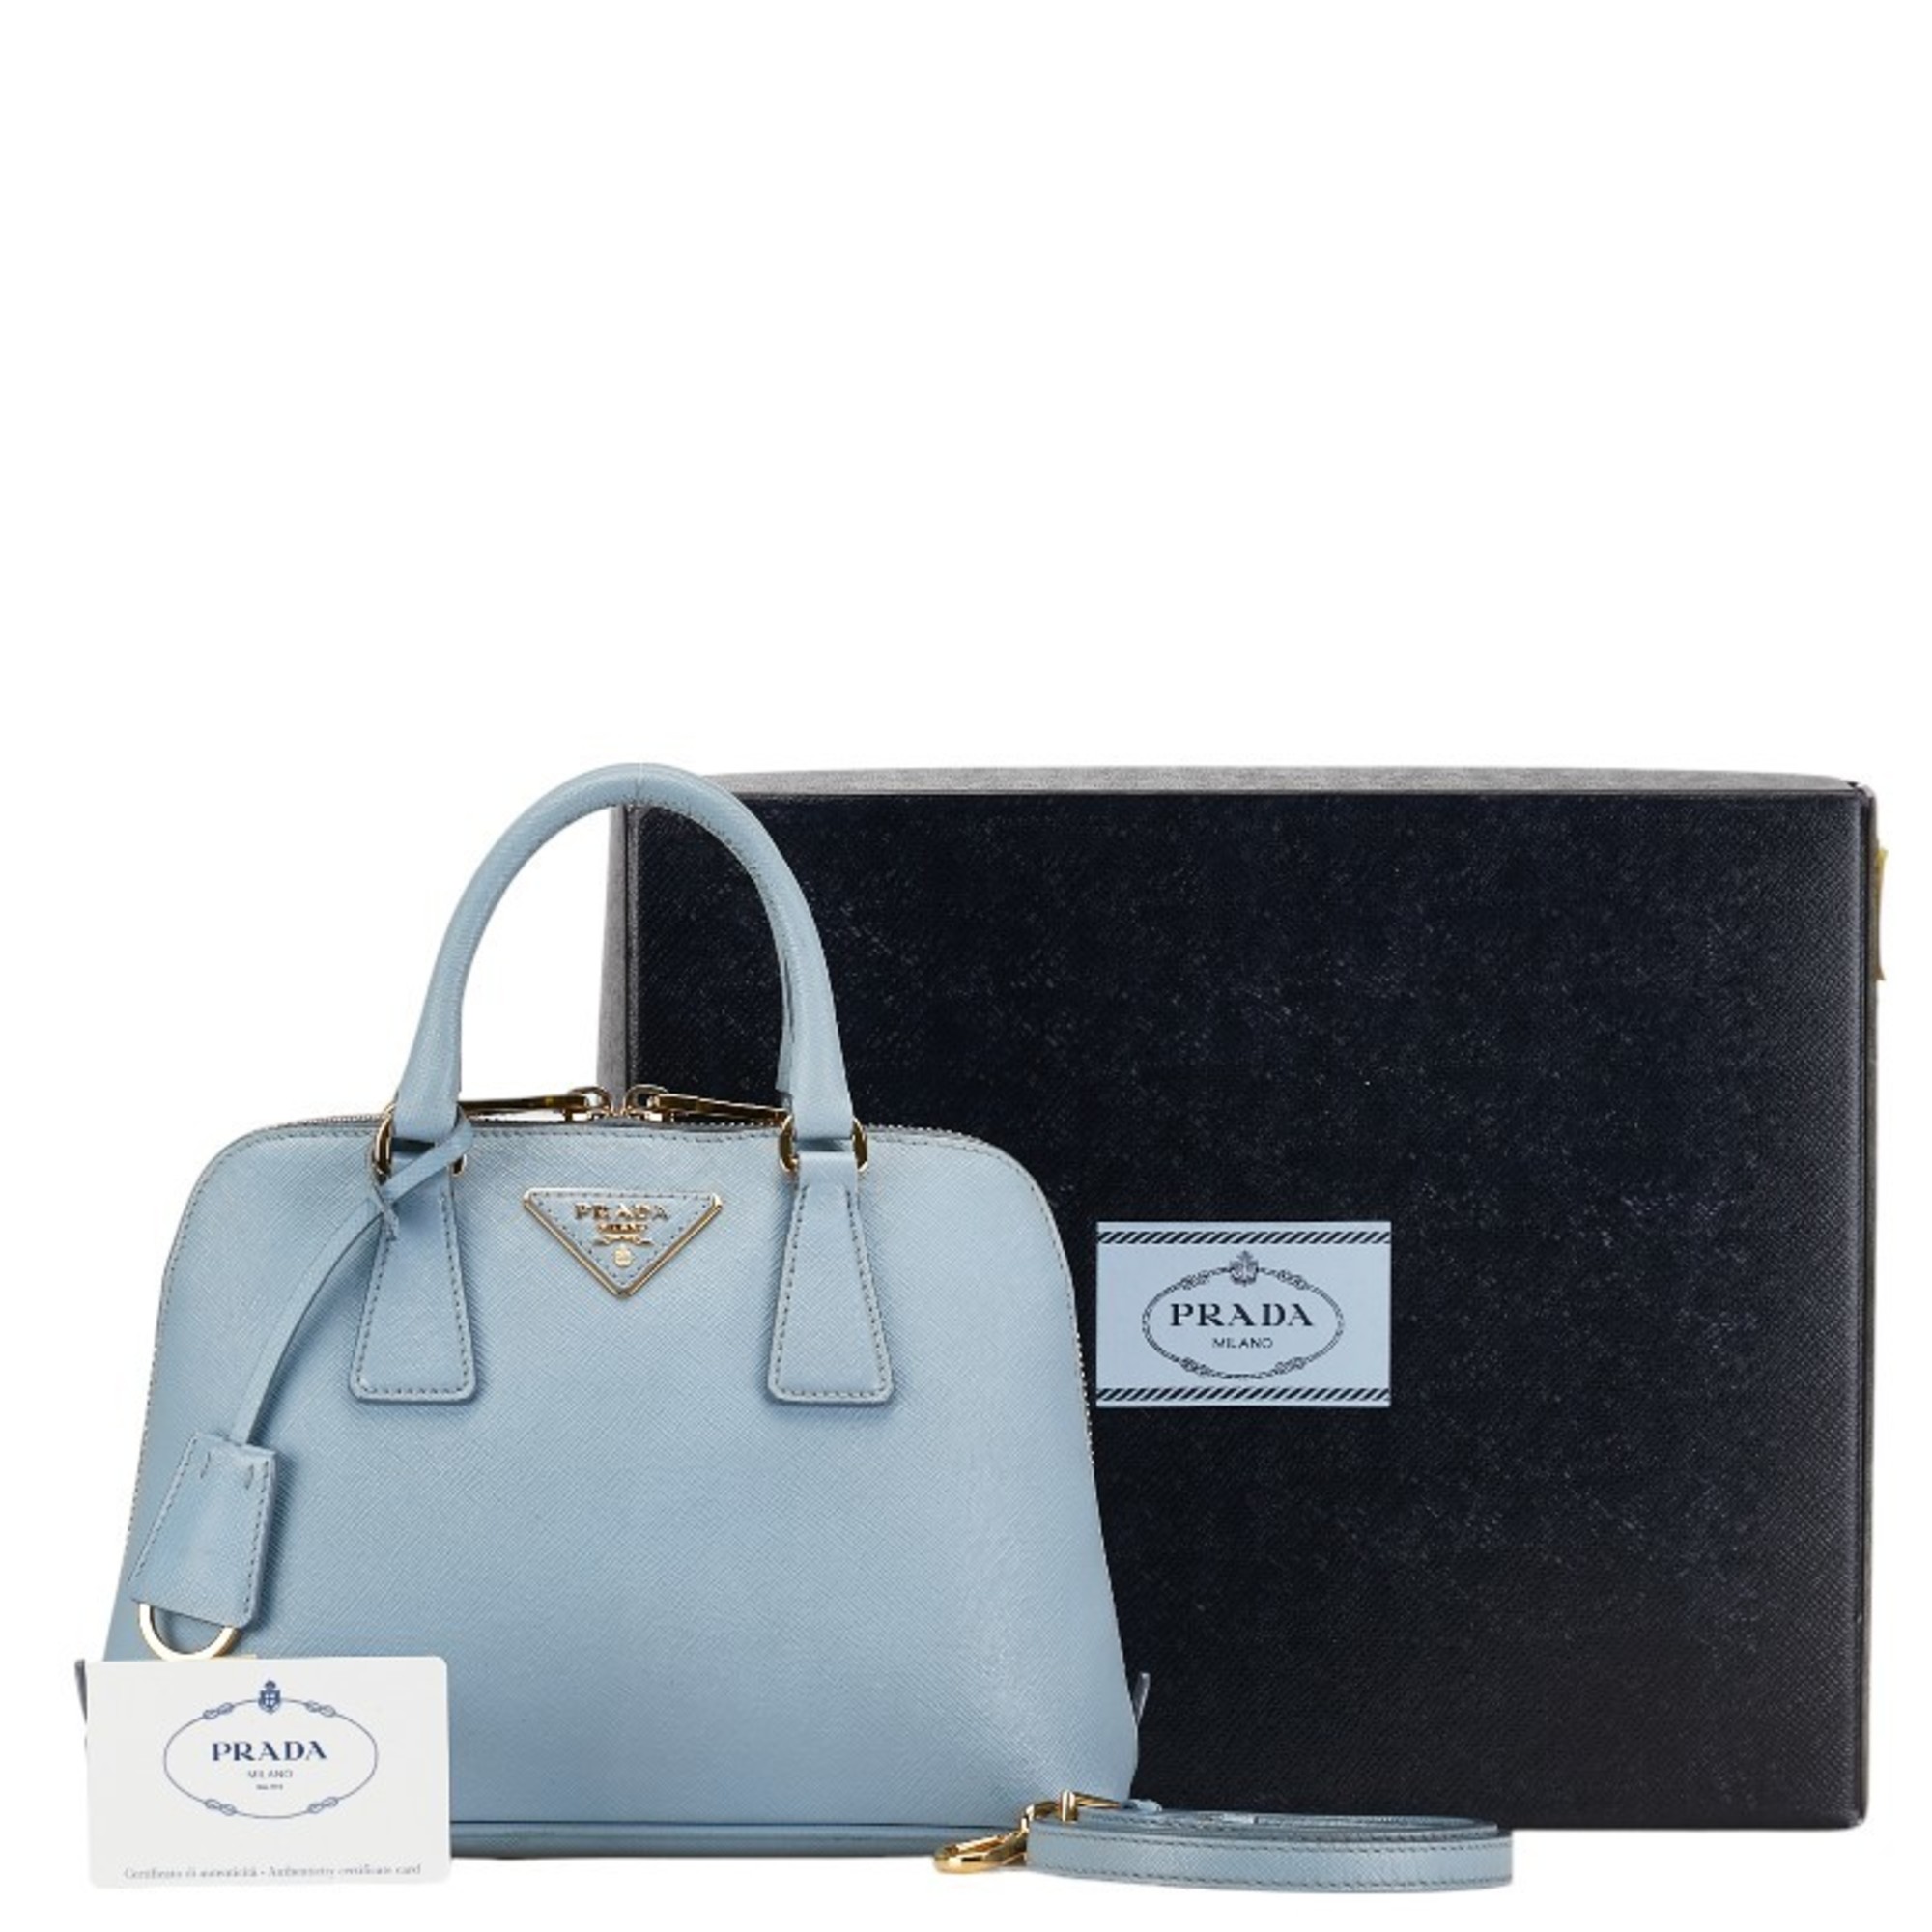 Prada Saffiano Triangle Plate Handbag Shoulder Bag BL0838 Light Blue Leather Women's PRADA